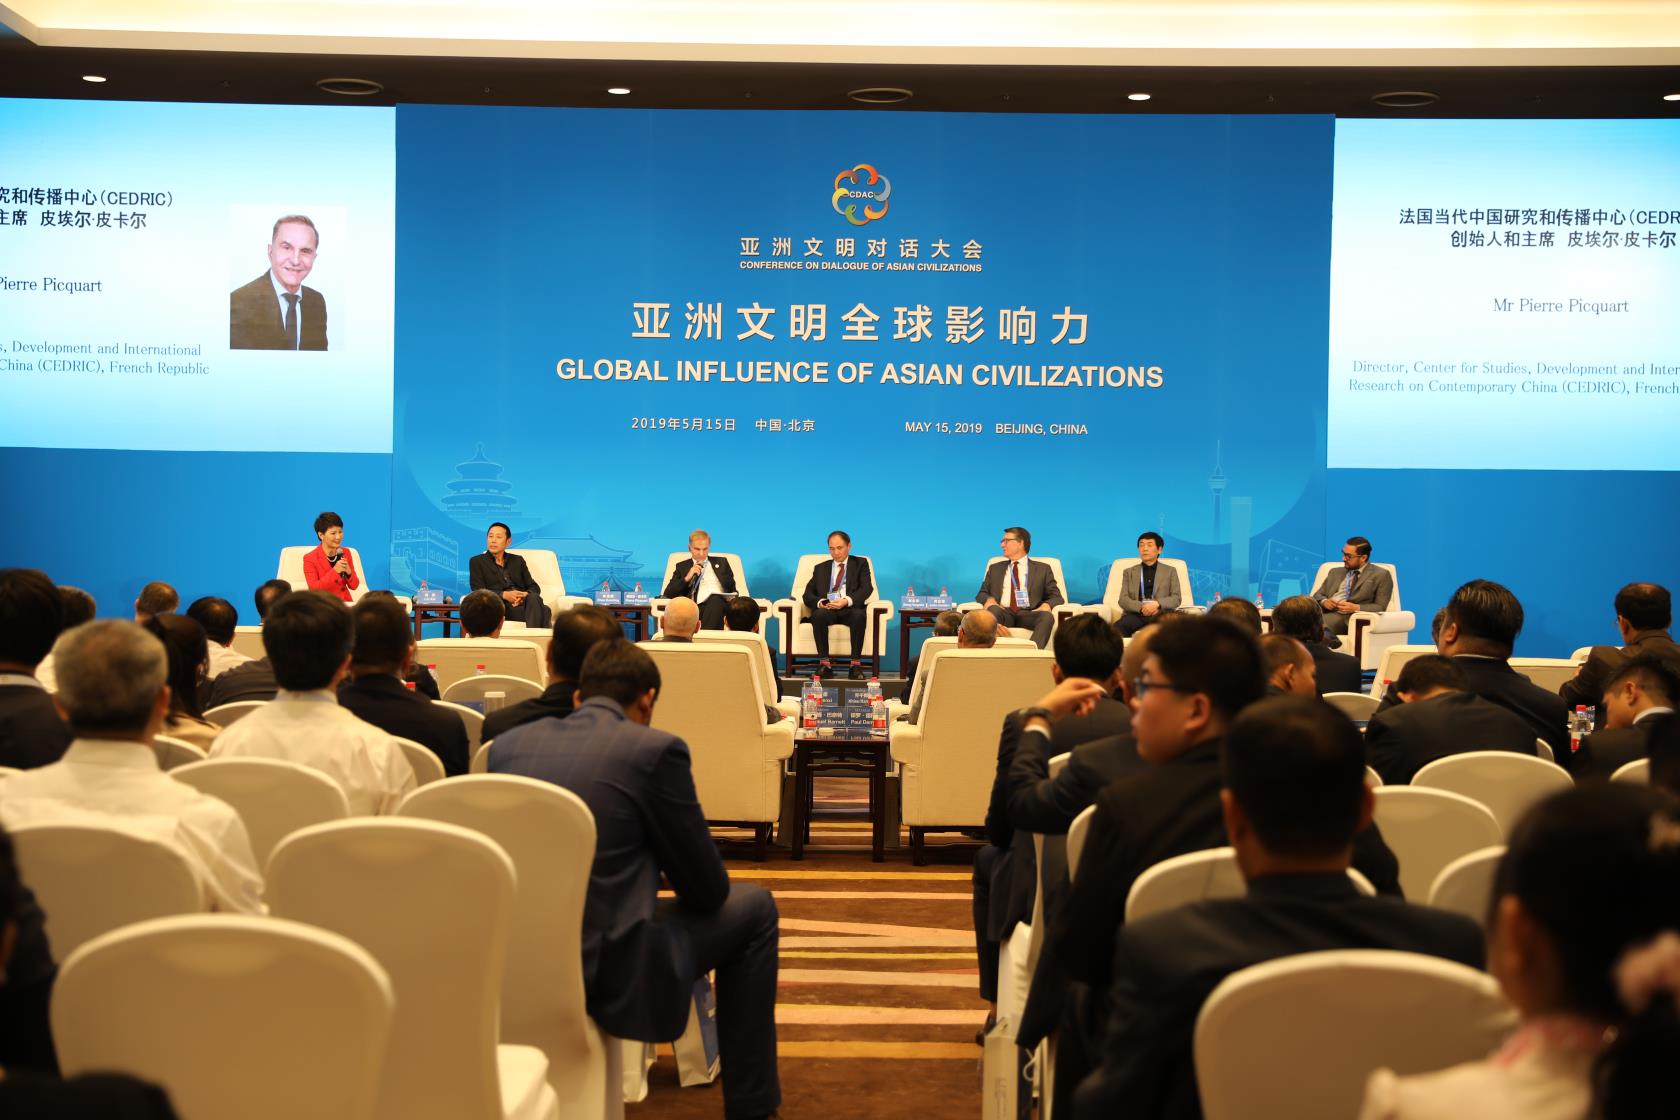 亚洲价值 全球共享——亚洲文明对话大会举行“亚洲文明全球影响力”分论坛